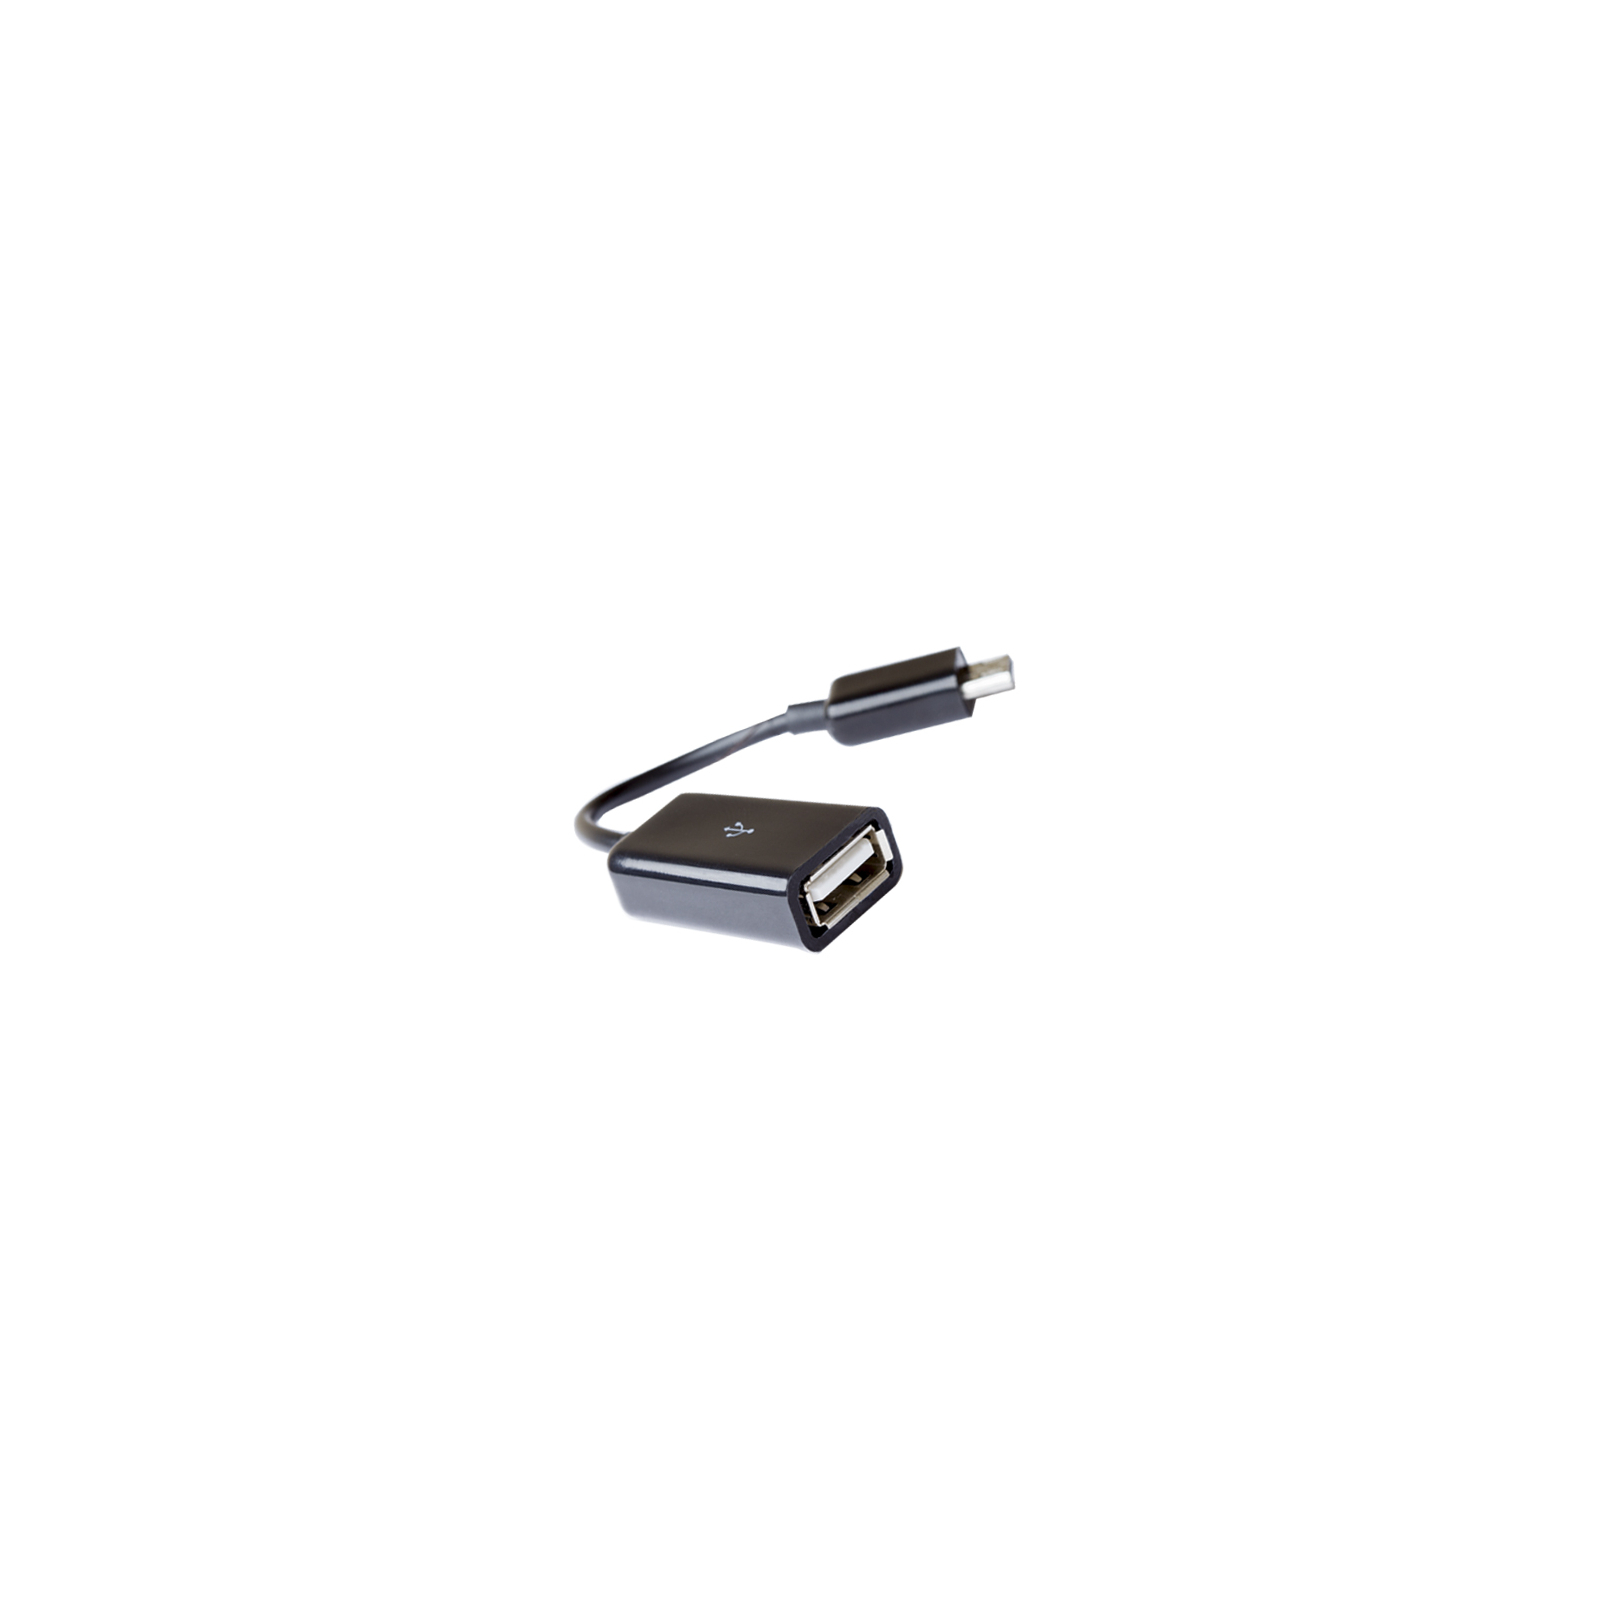 Дата кабель USB 2.0 Micro 5P to AF OTG 0.1m Gemix (Art.GC 1652)